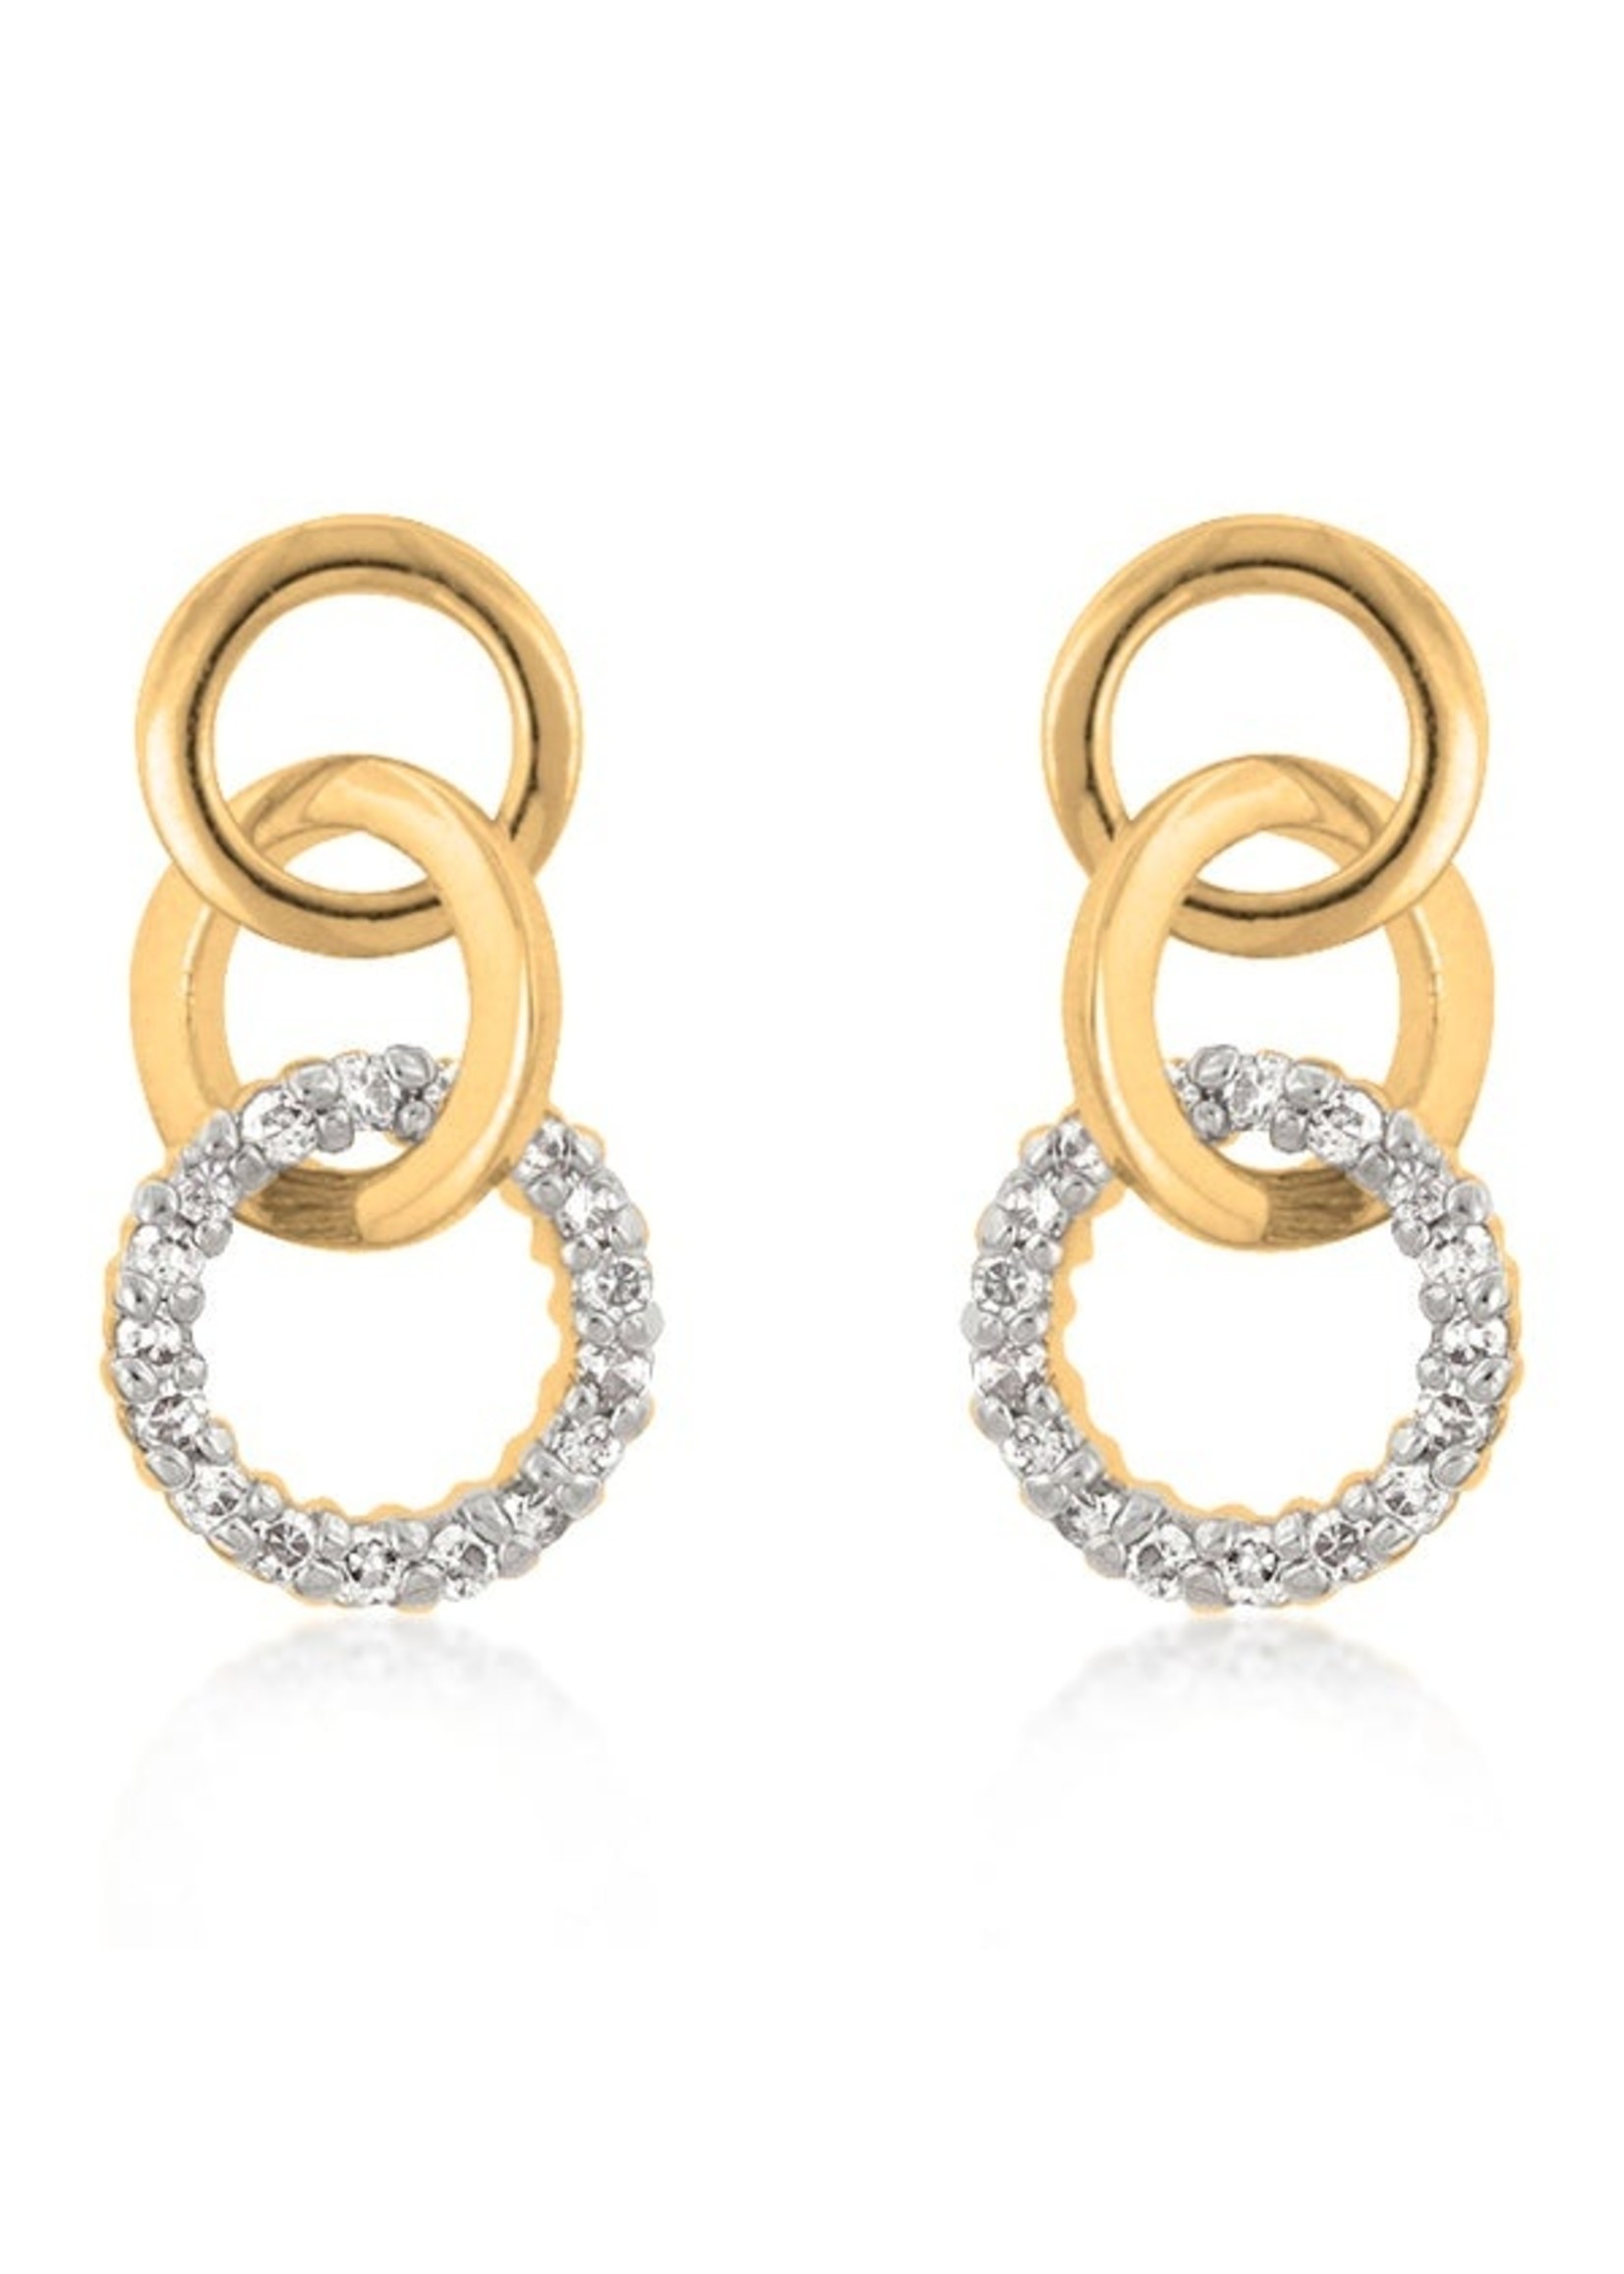 KDesign Regal Collection Triplet Hooplet Earrings